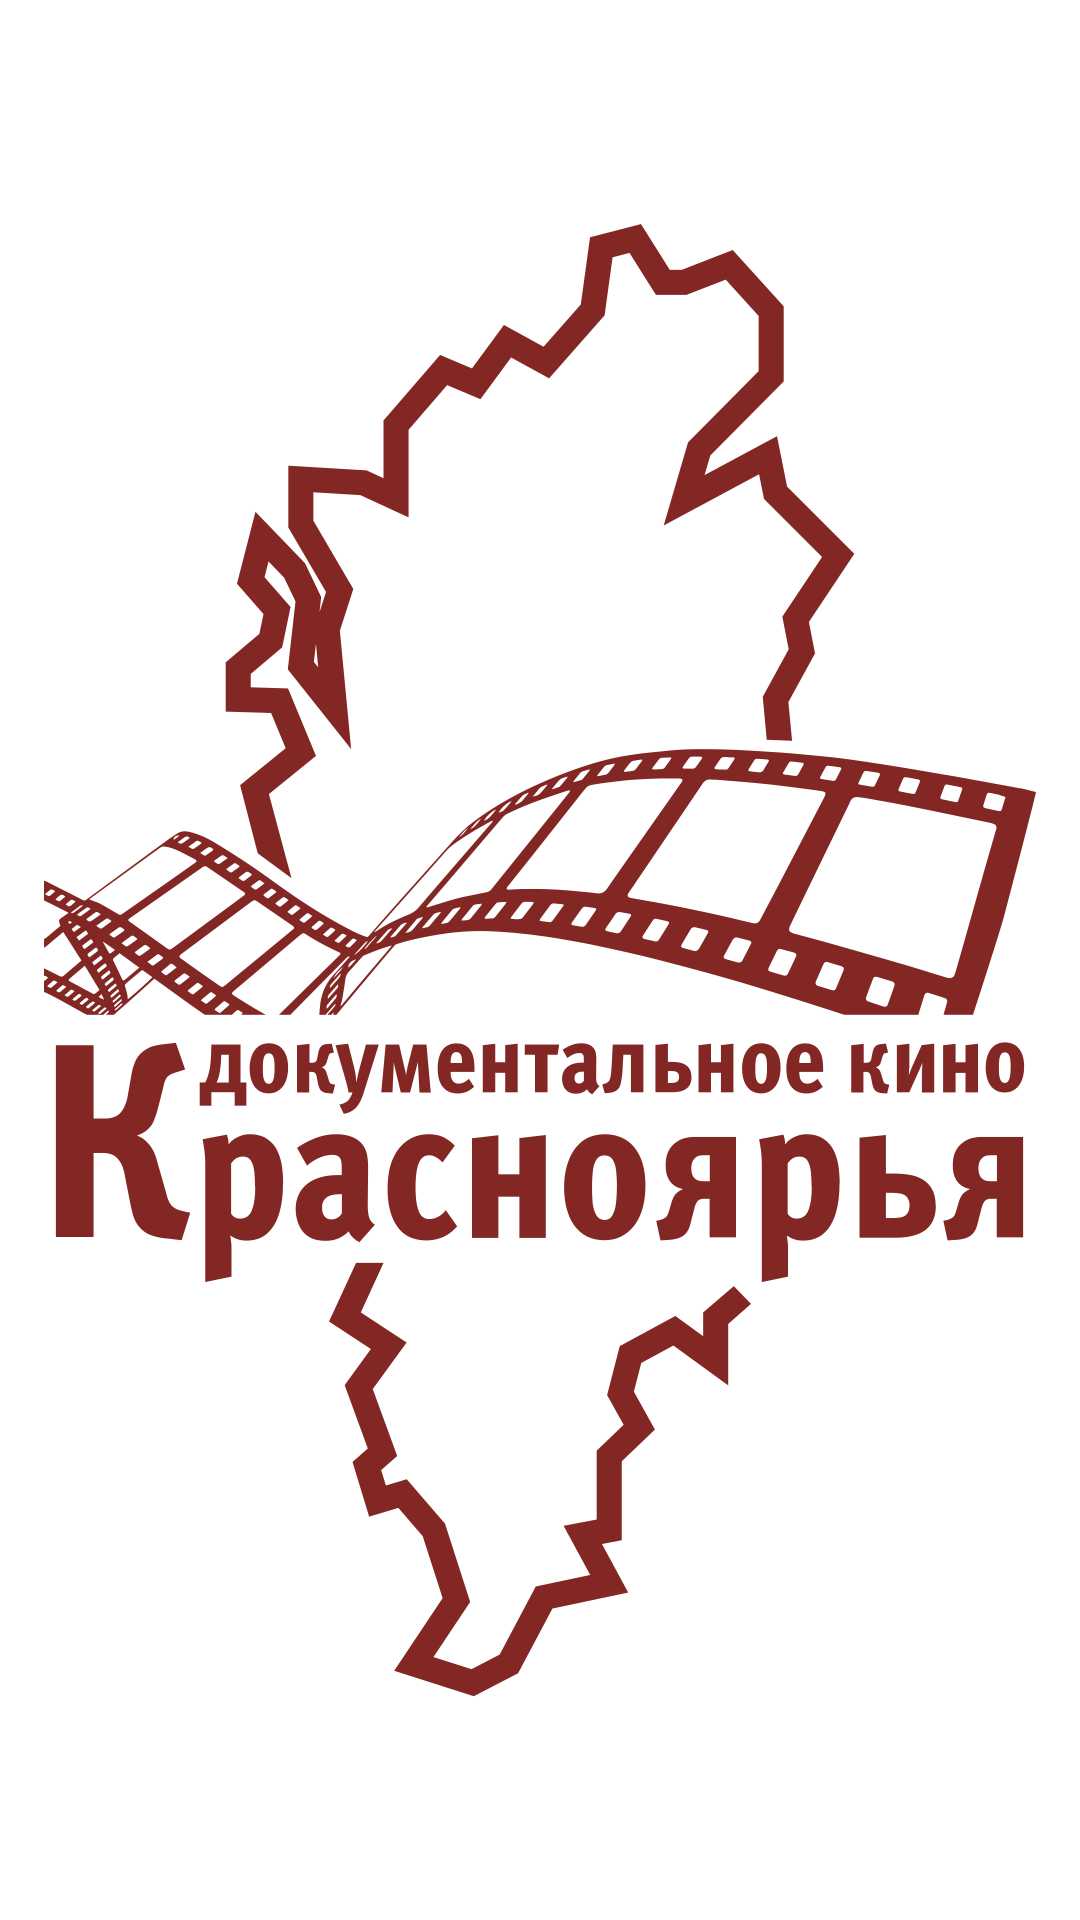 Объявлен прием заявок на грант «Документальное кино Красноярского края» в 2022 году